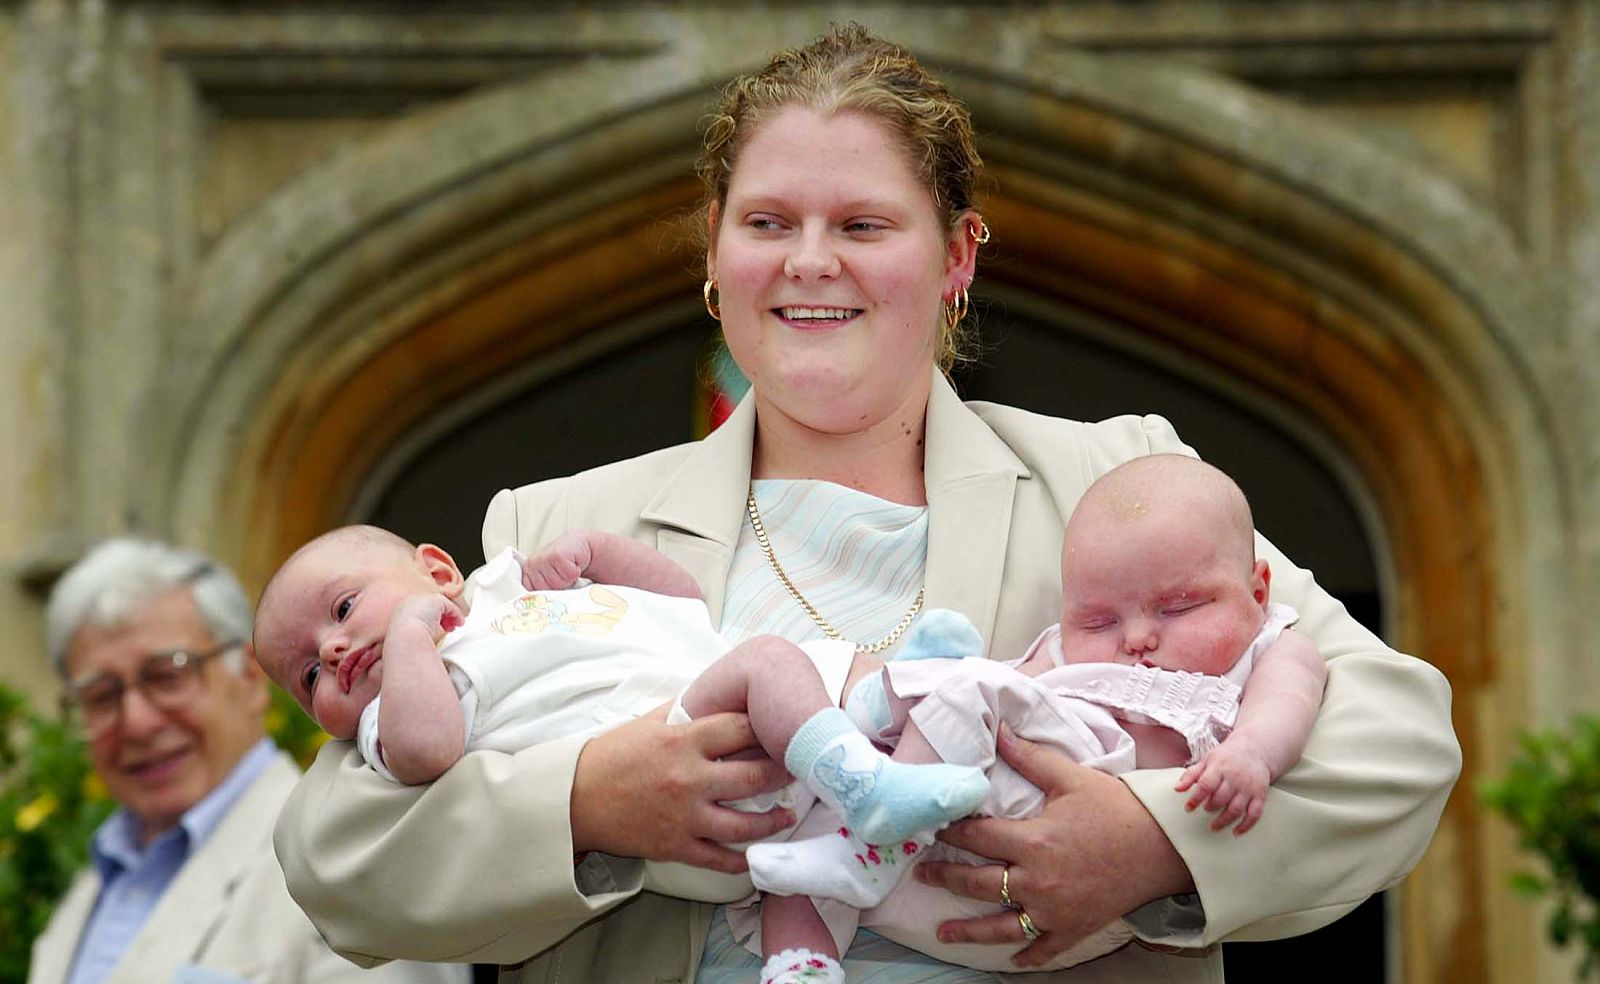 La primera niña probeta del mundo, Louise Brown, posa con unos gemelos en brazos